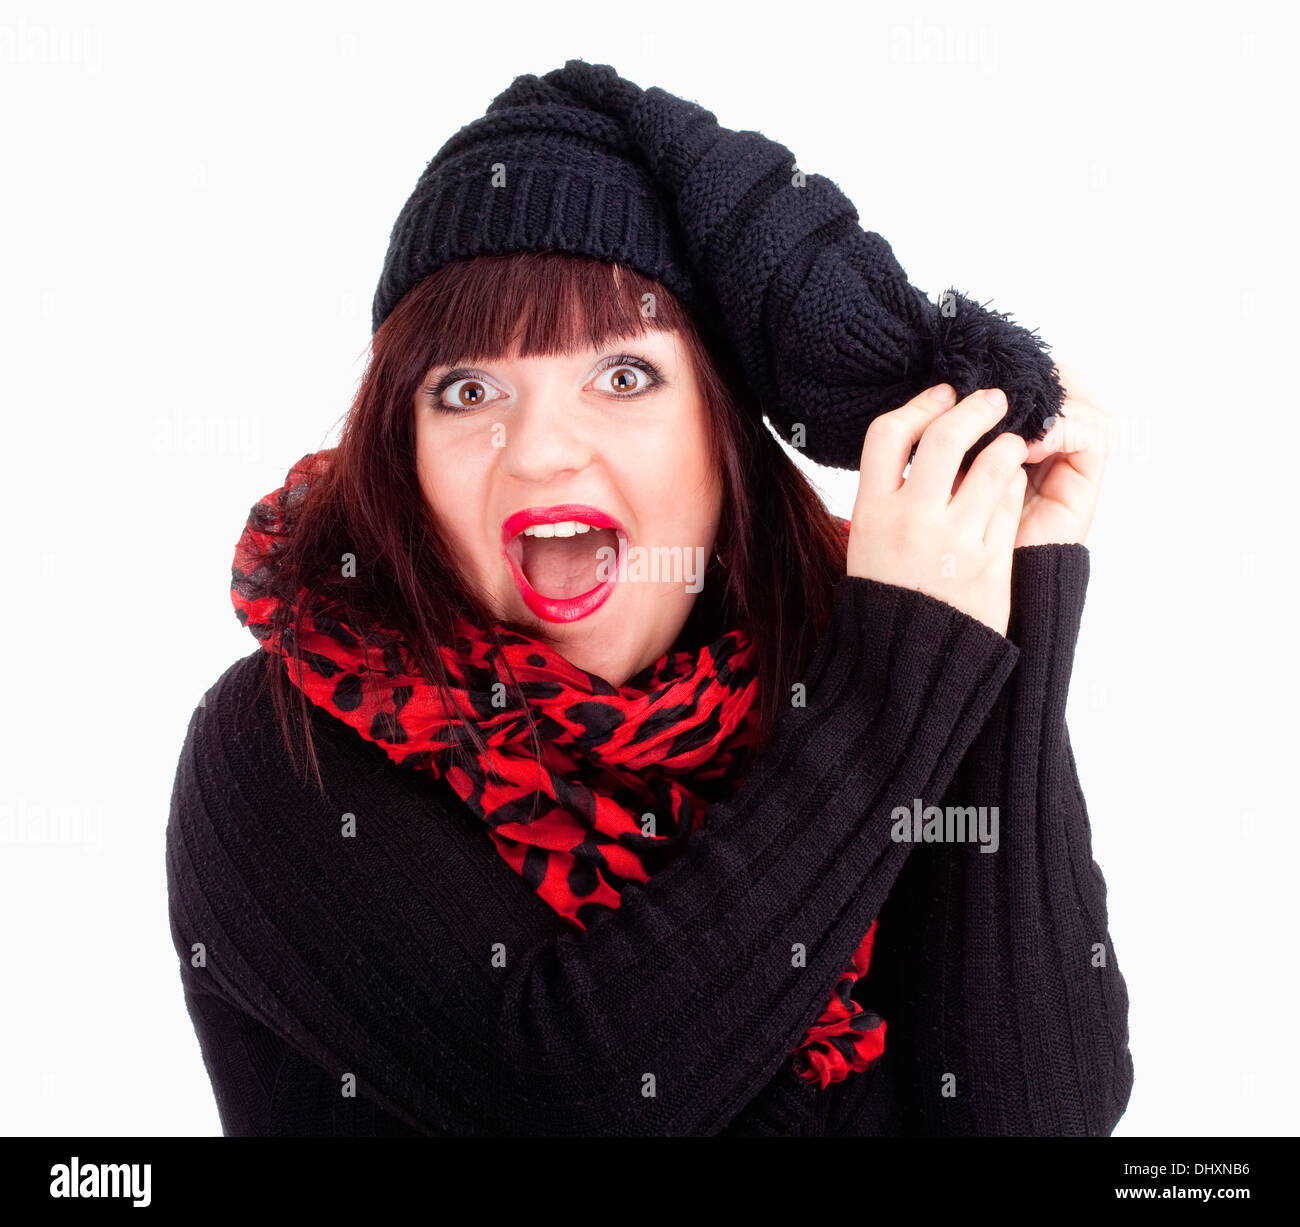 La mujer sorprendida en el gorro negro y pañuelo rojo - aislado en blanco Foto de stock